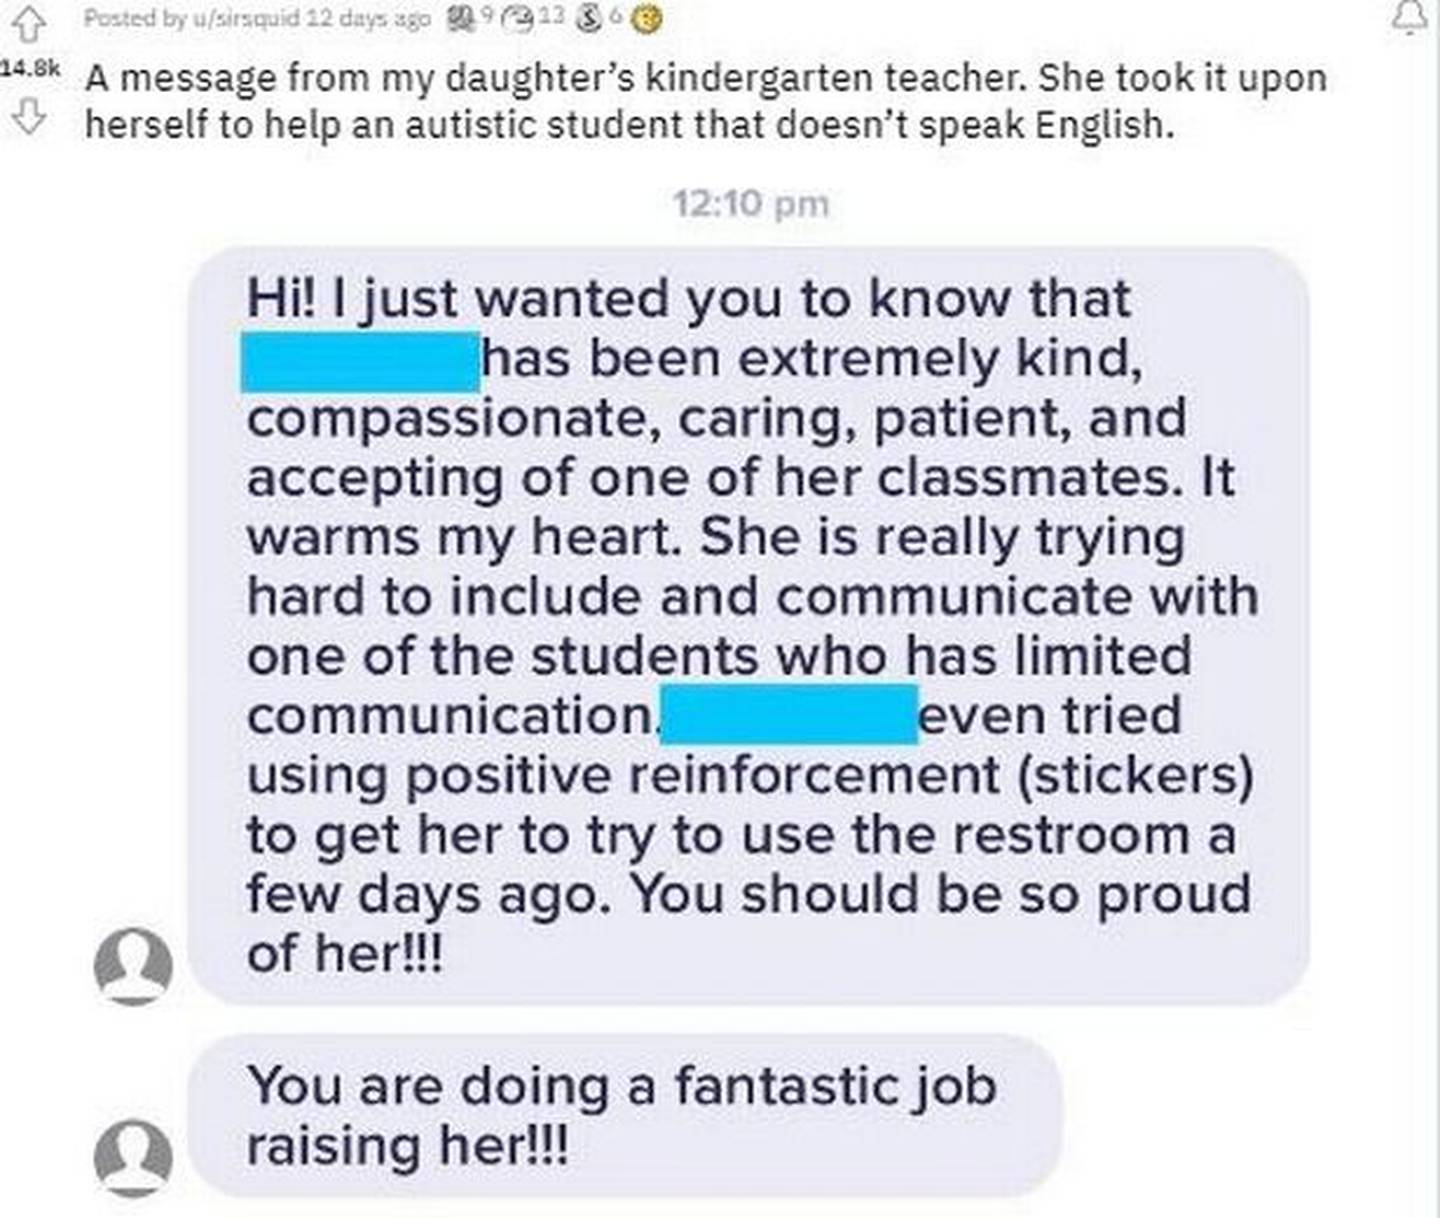 A professora enviou a mensagem elogiando as atitudes da menina.